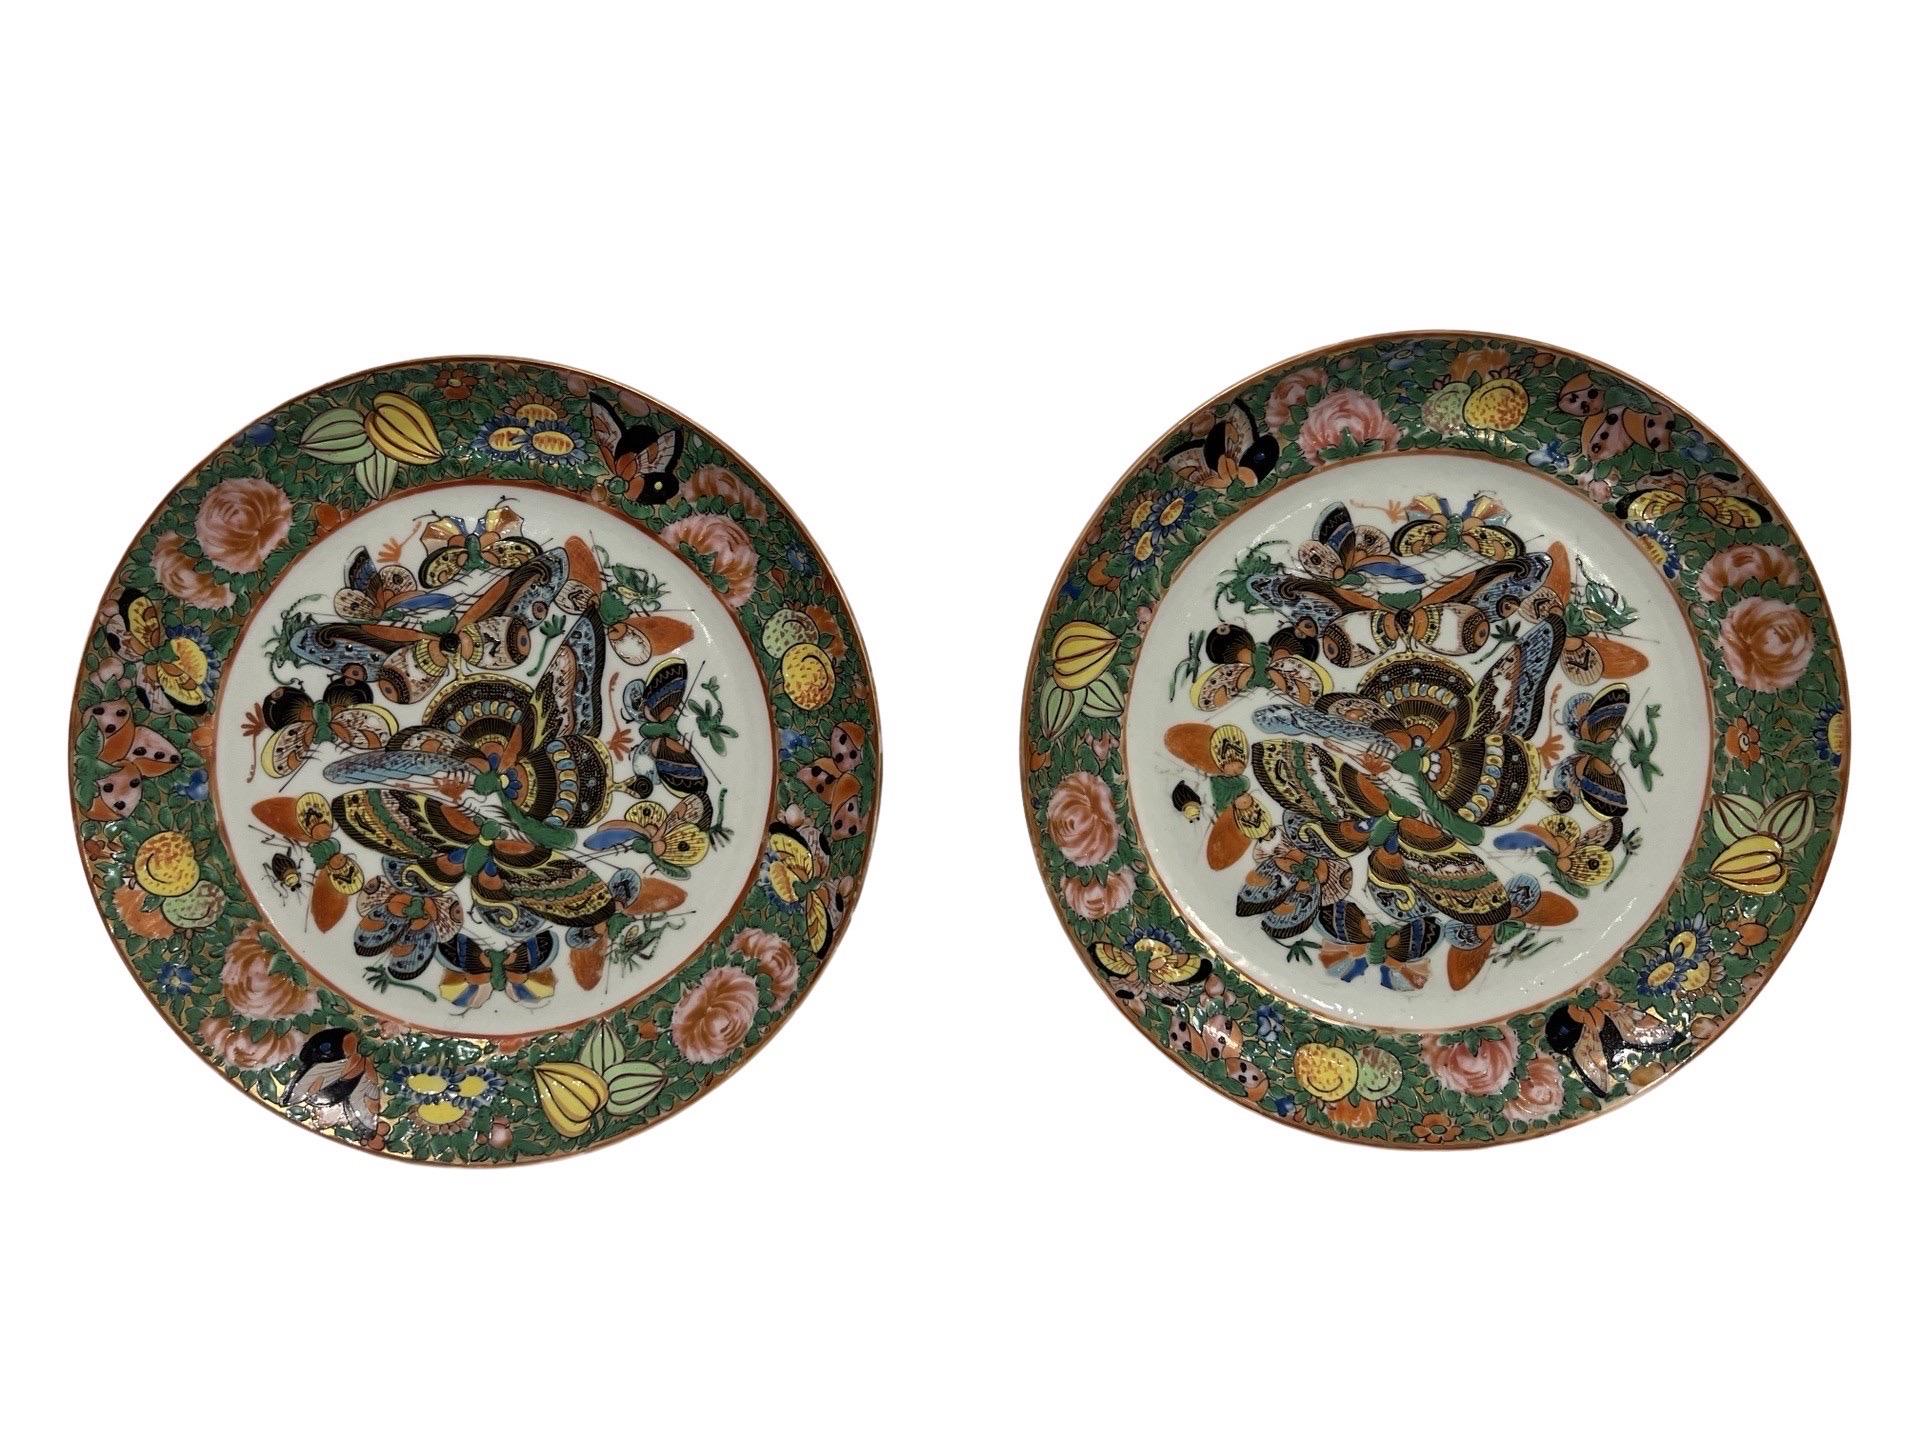 Chinois, début du 19e siècle.

Paire d'assiettes en porcelaine d'exportation chinoise à motif 